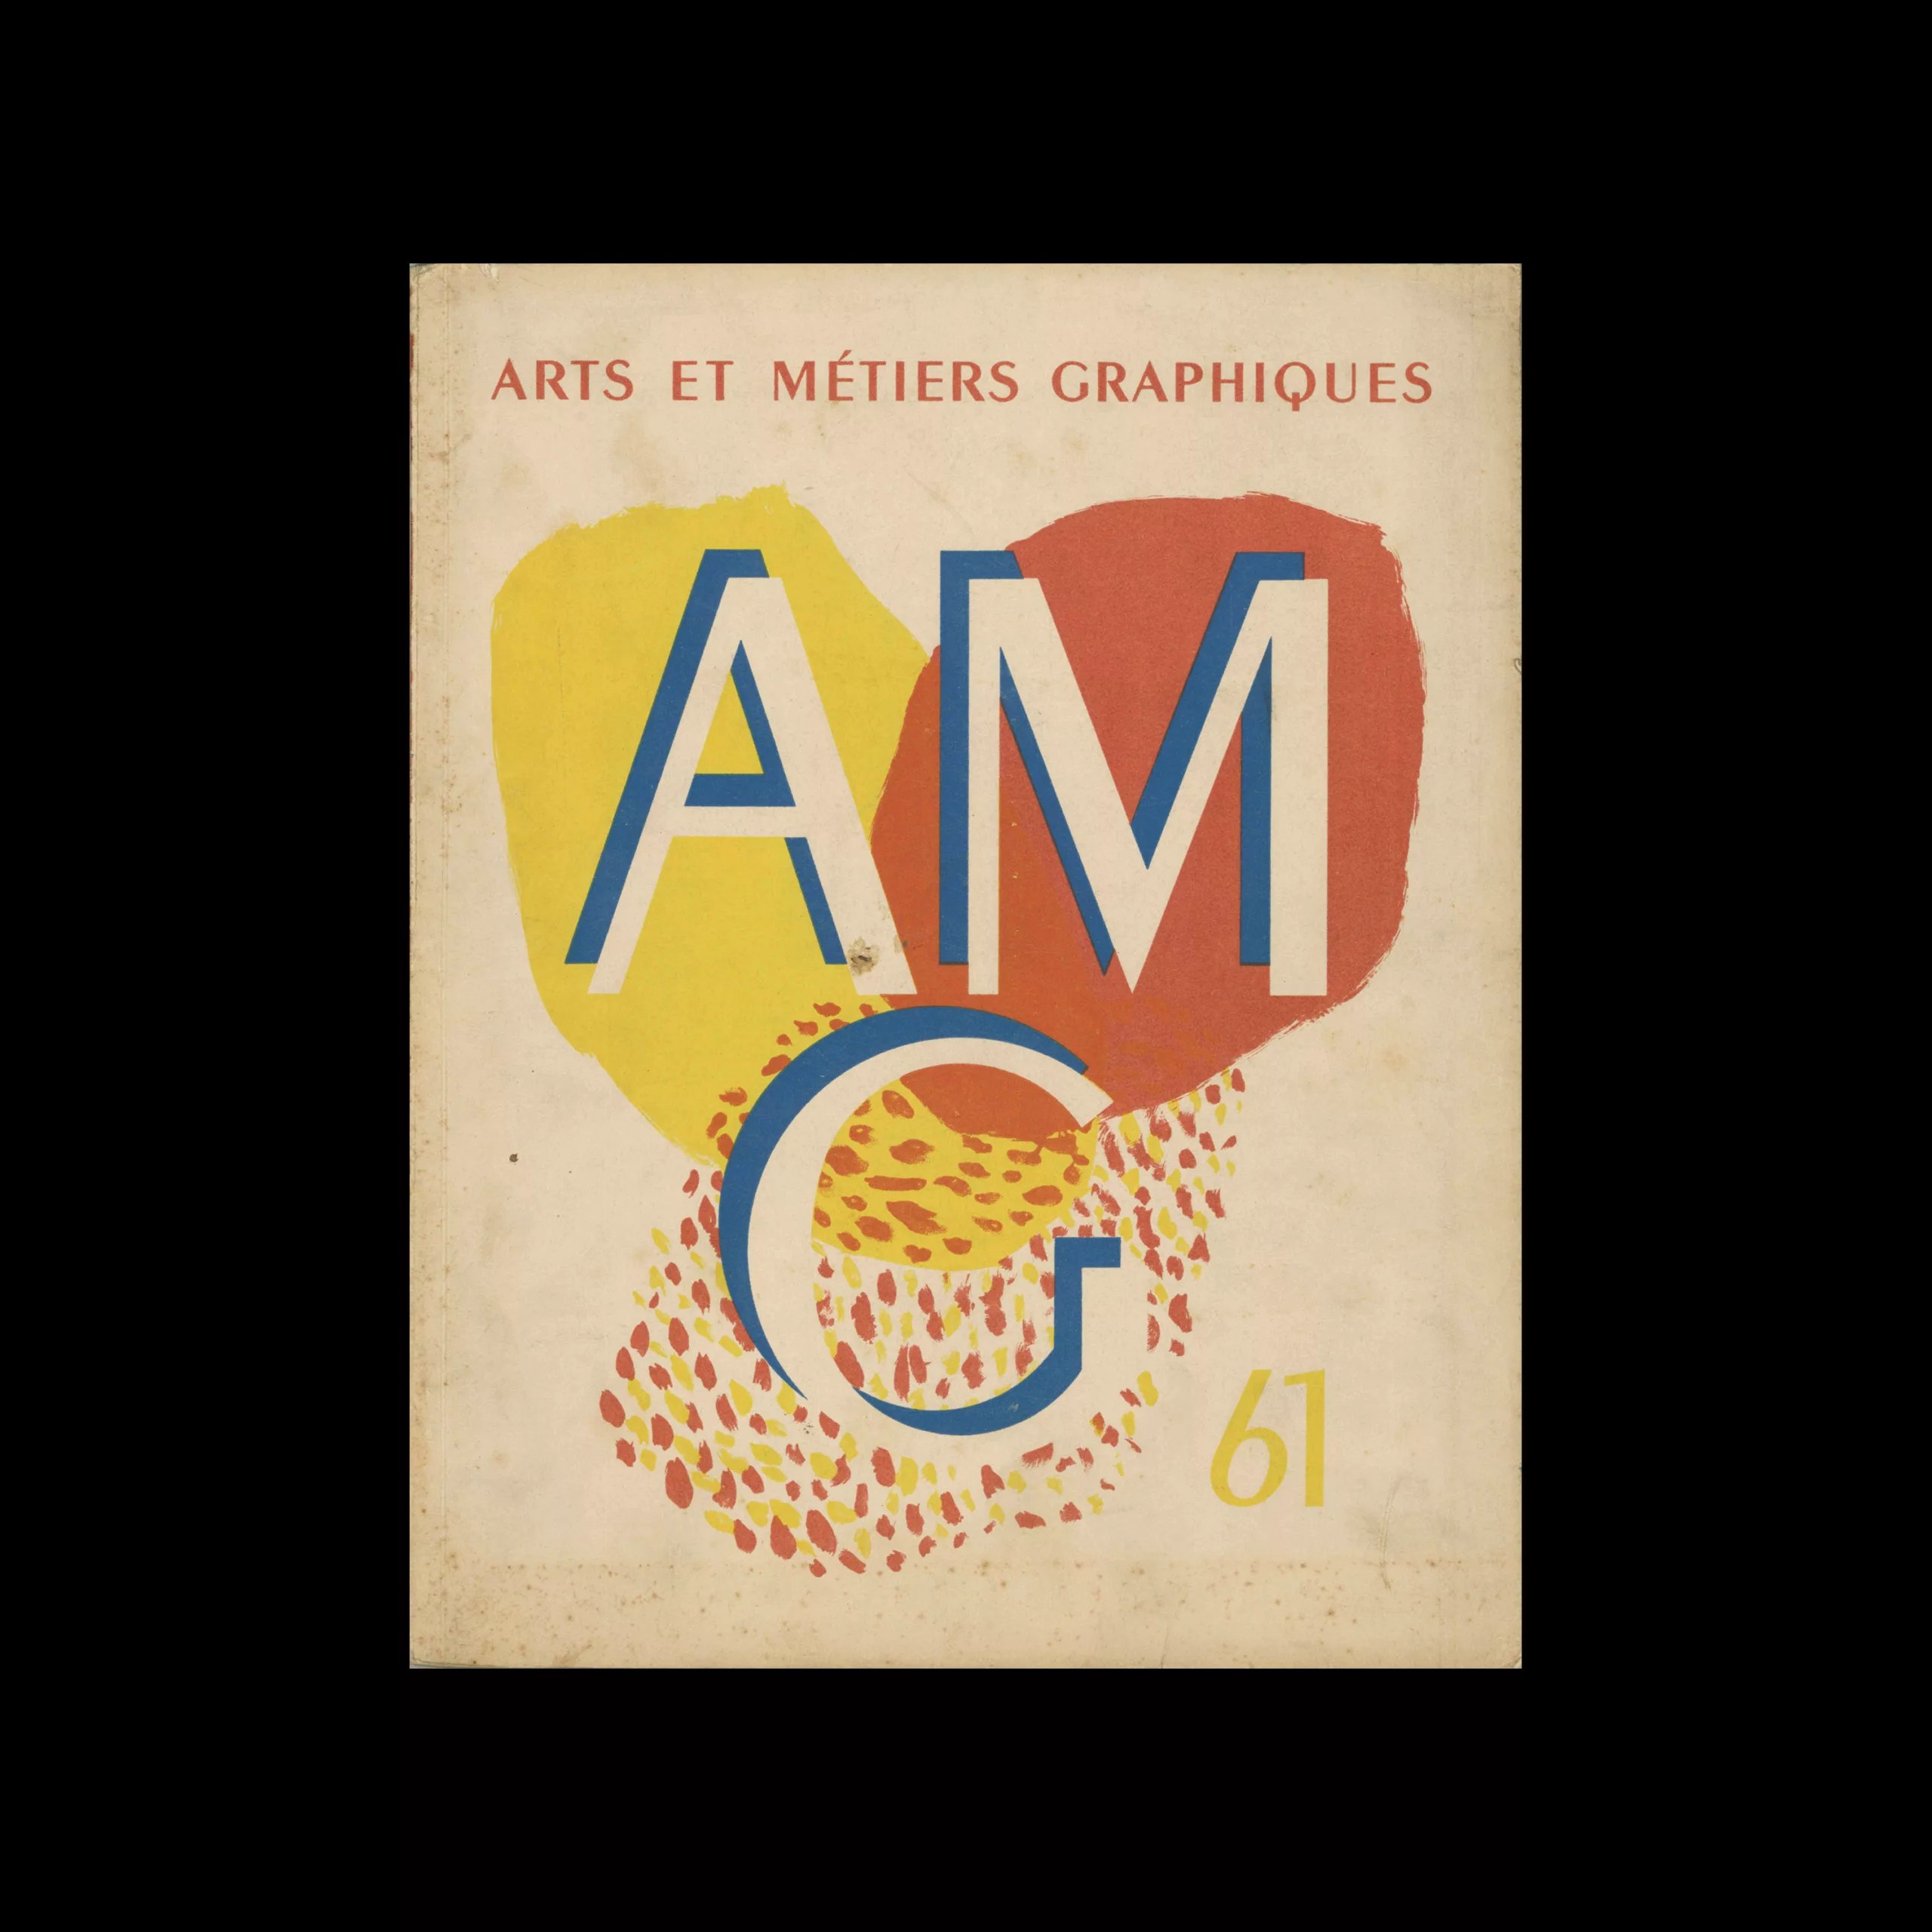 Arts et Metiers Graphiques, 61, 1938